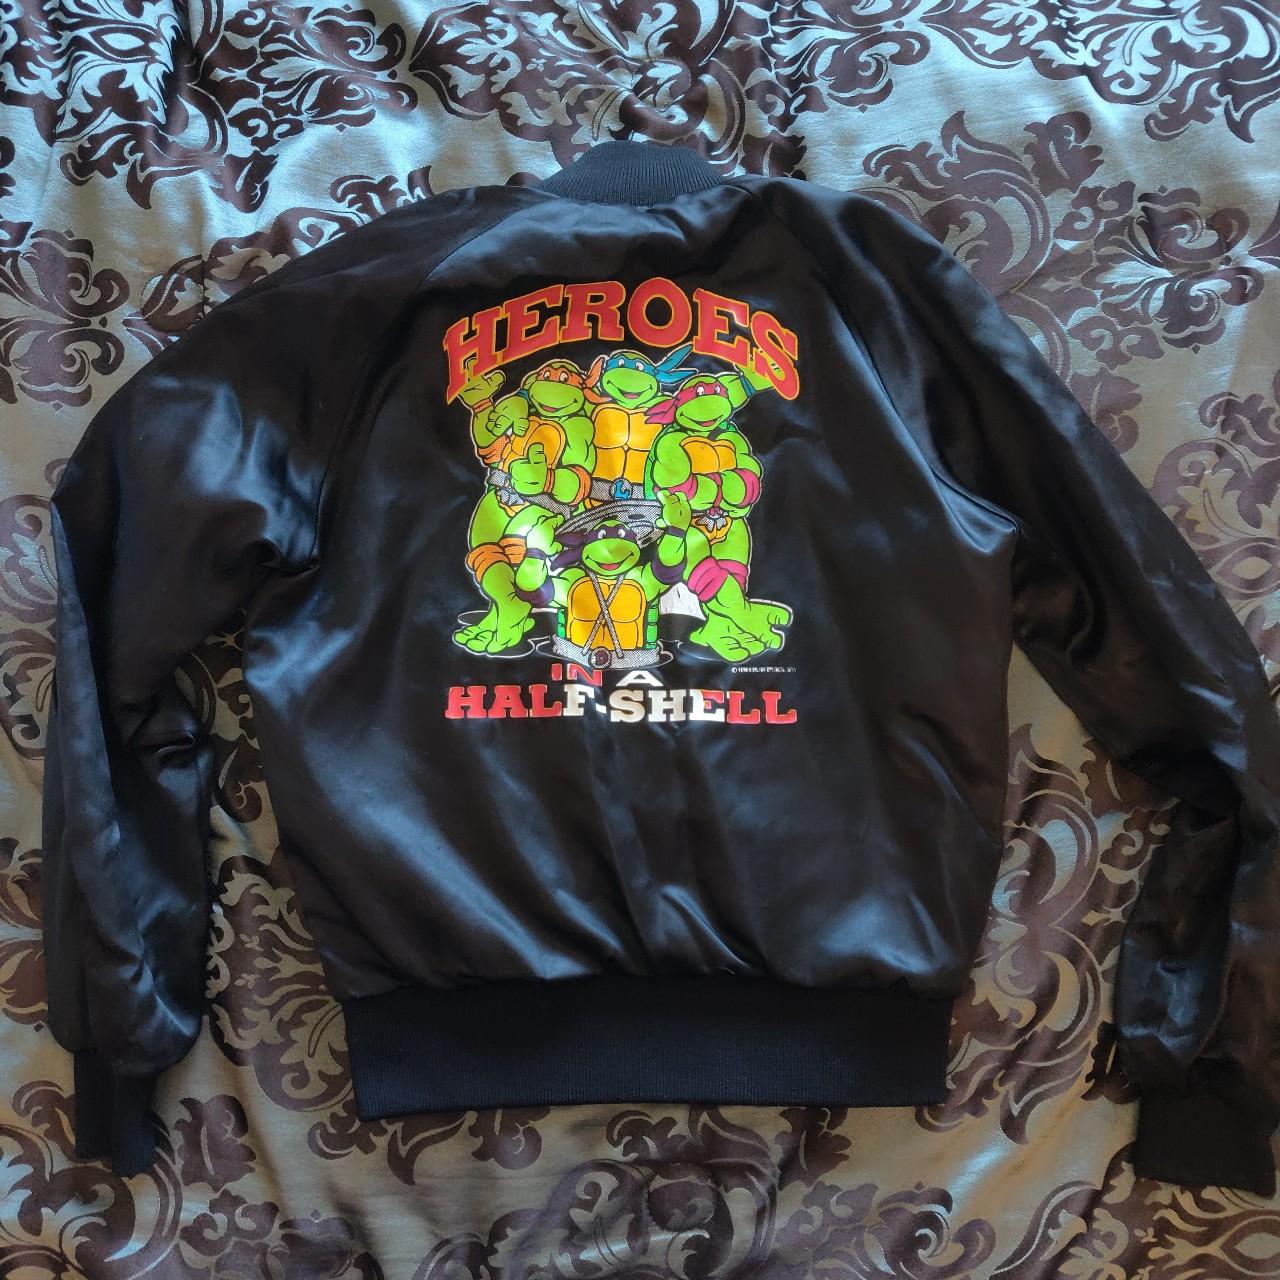 Vintage 90s Teenage Mutant Ninja Turtles Jacket / Black Satin Track Jacket  / 90s Cartoon Shirt / Lightweight Jacket 